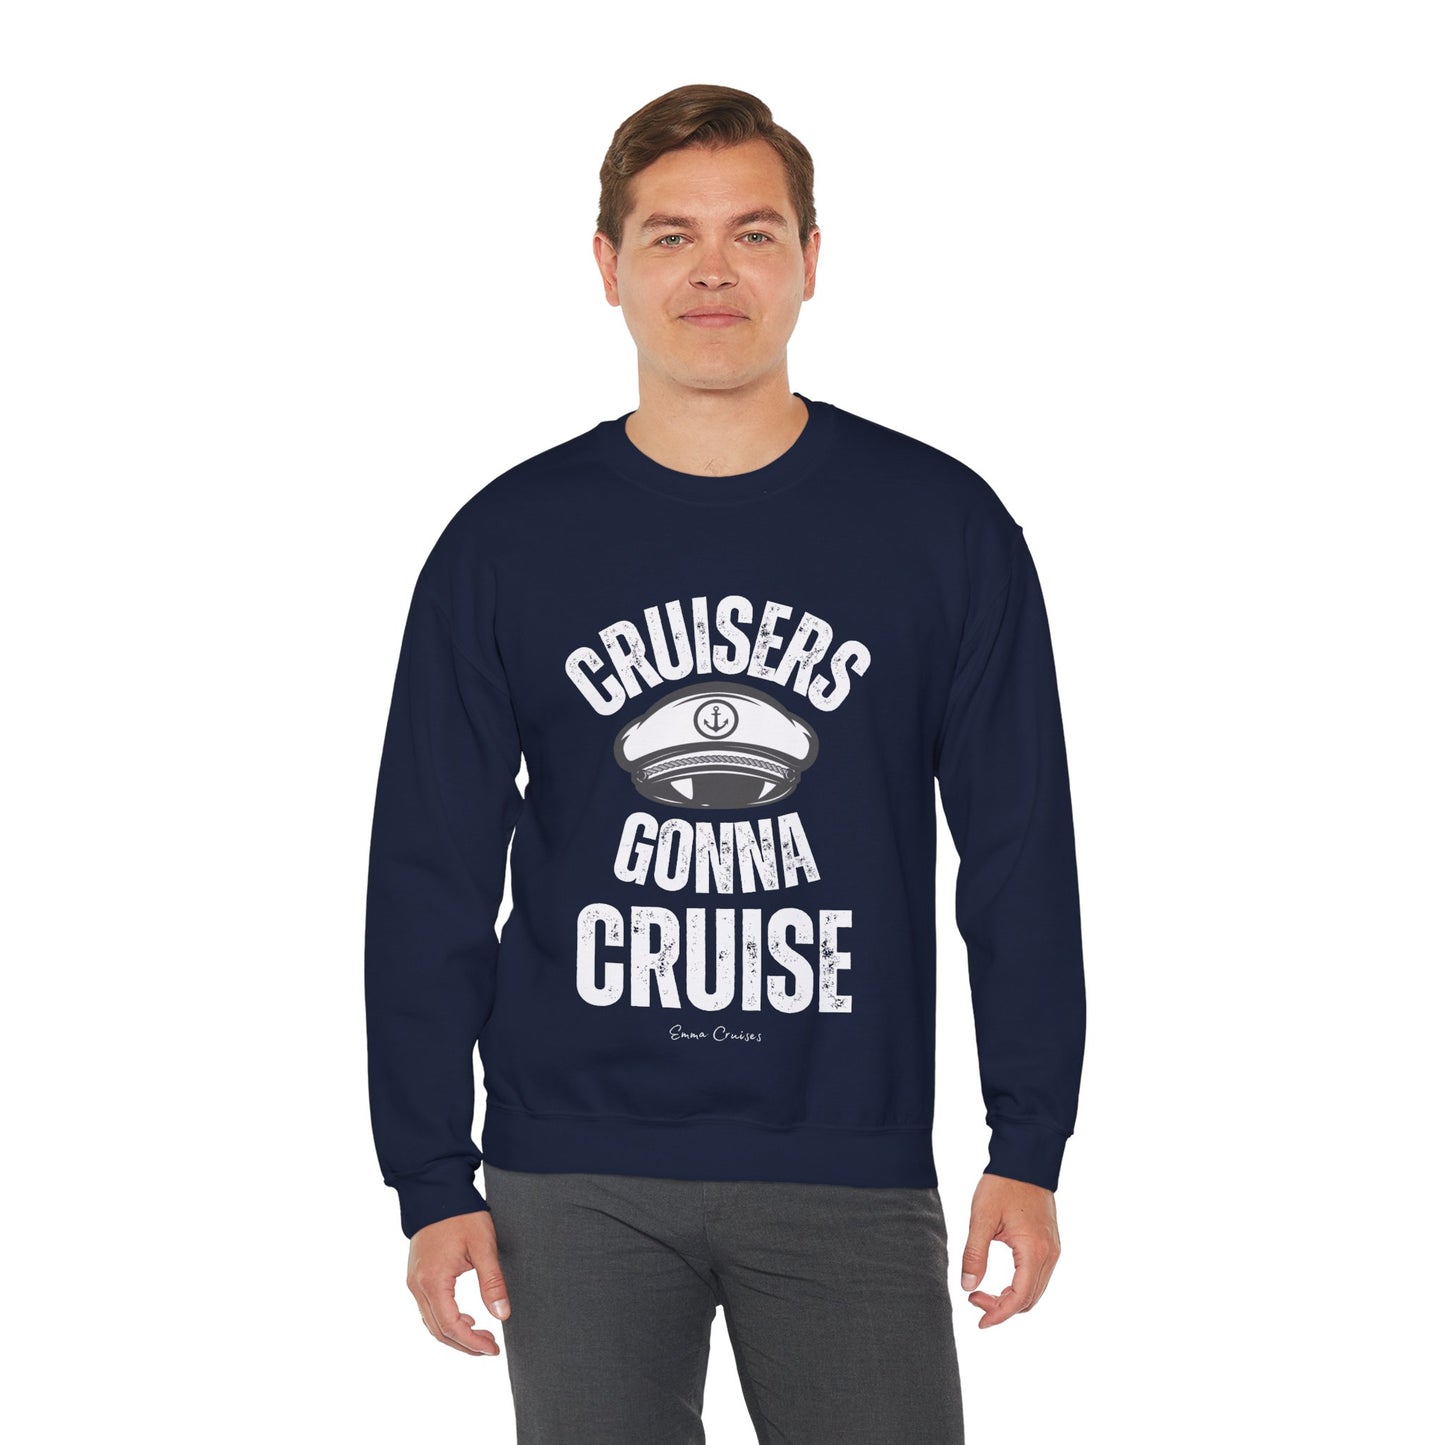 Cruisers Gonna Cruise - UNISEX Crewneck Sweatshirt